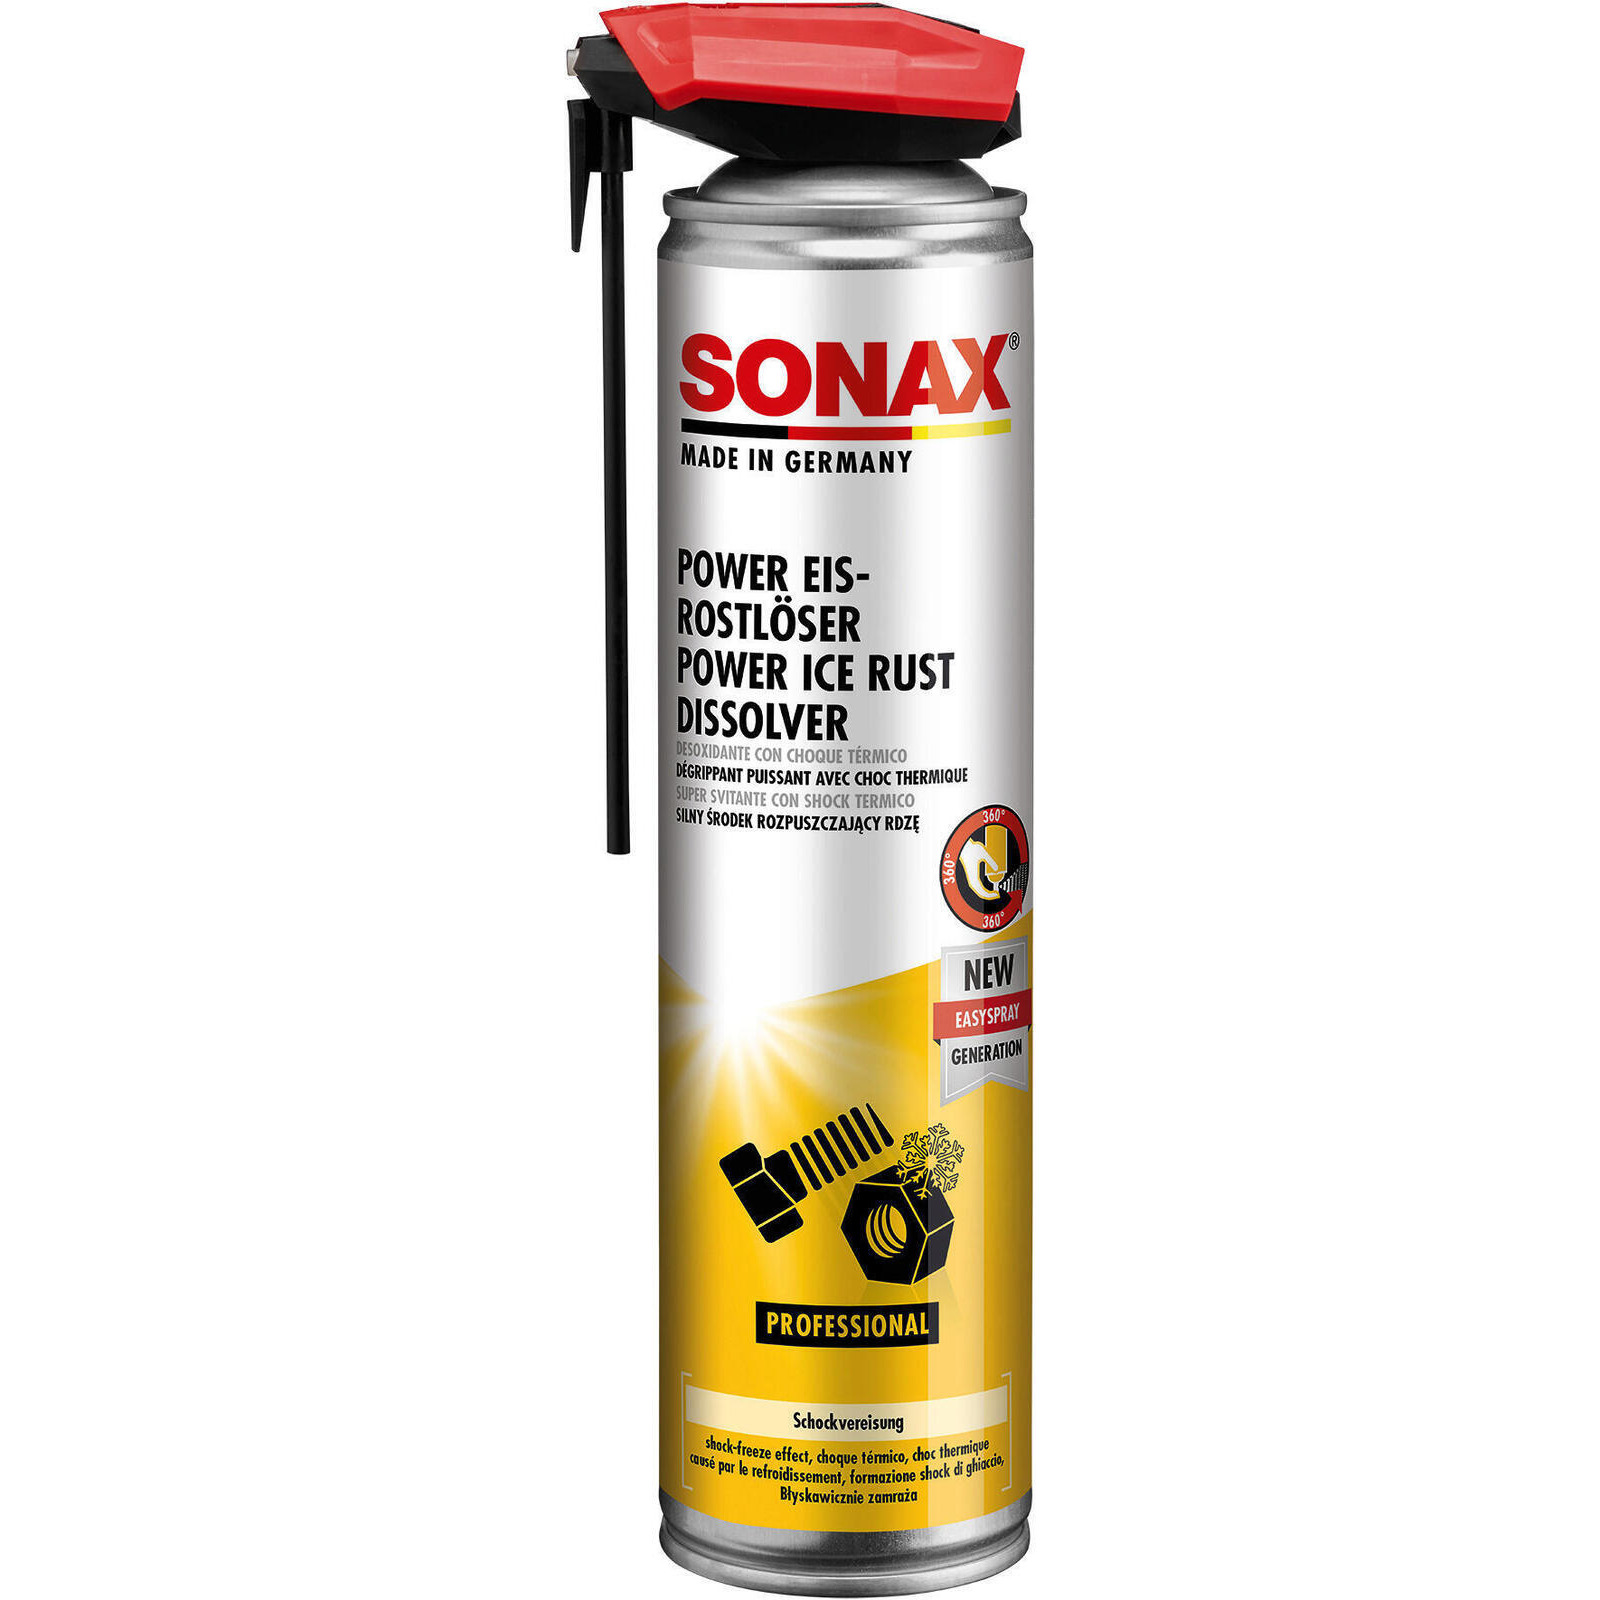 SONAX Rostlöser PowerEis-Rostlöser mit EasySpray